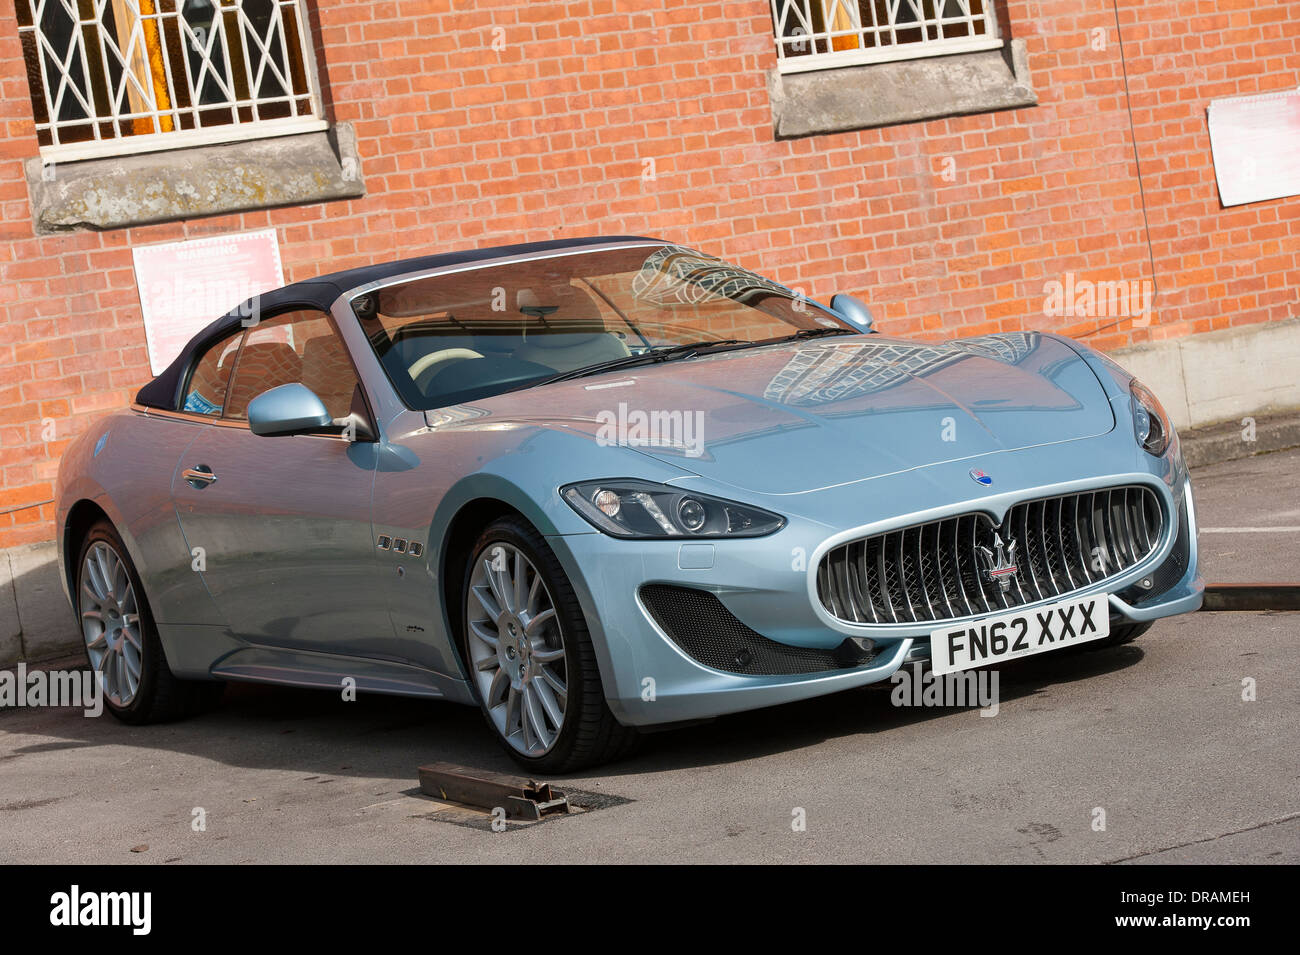 Maserati Grancabrio luxury sports car. Stock Photo